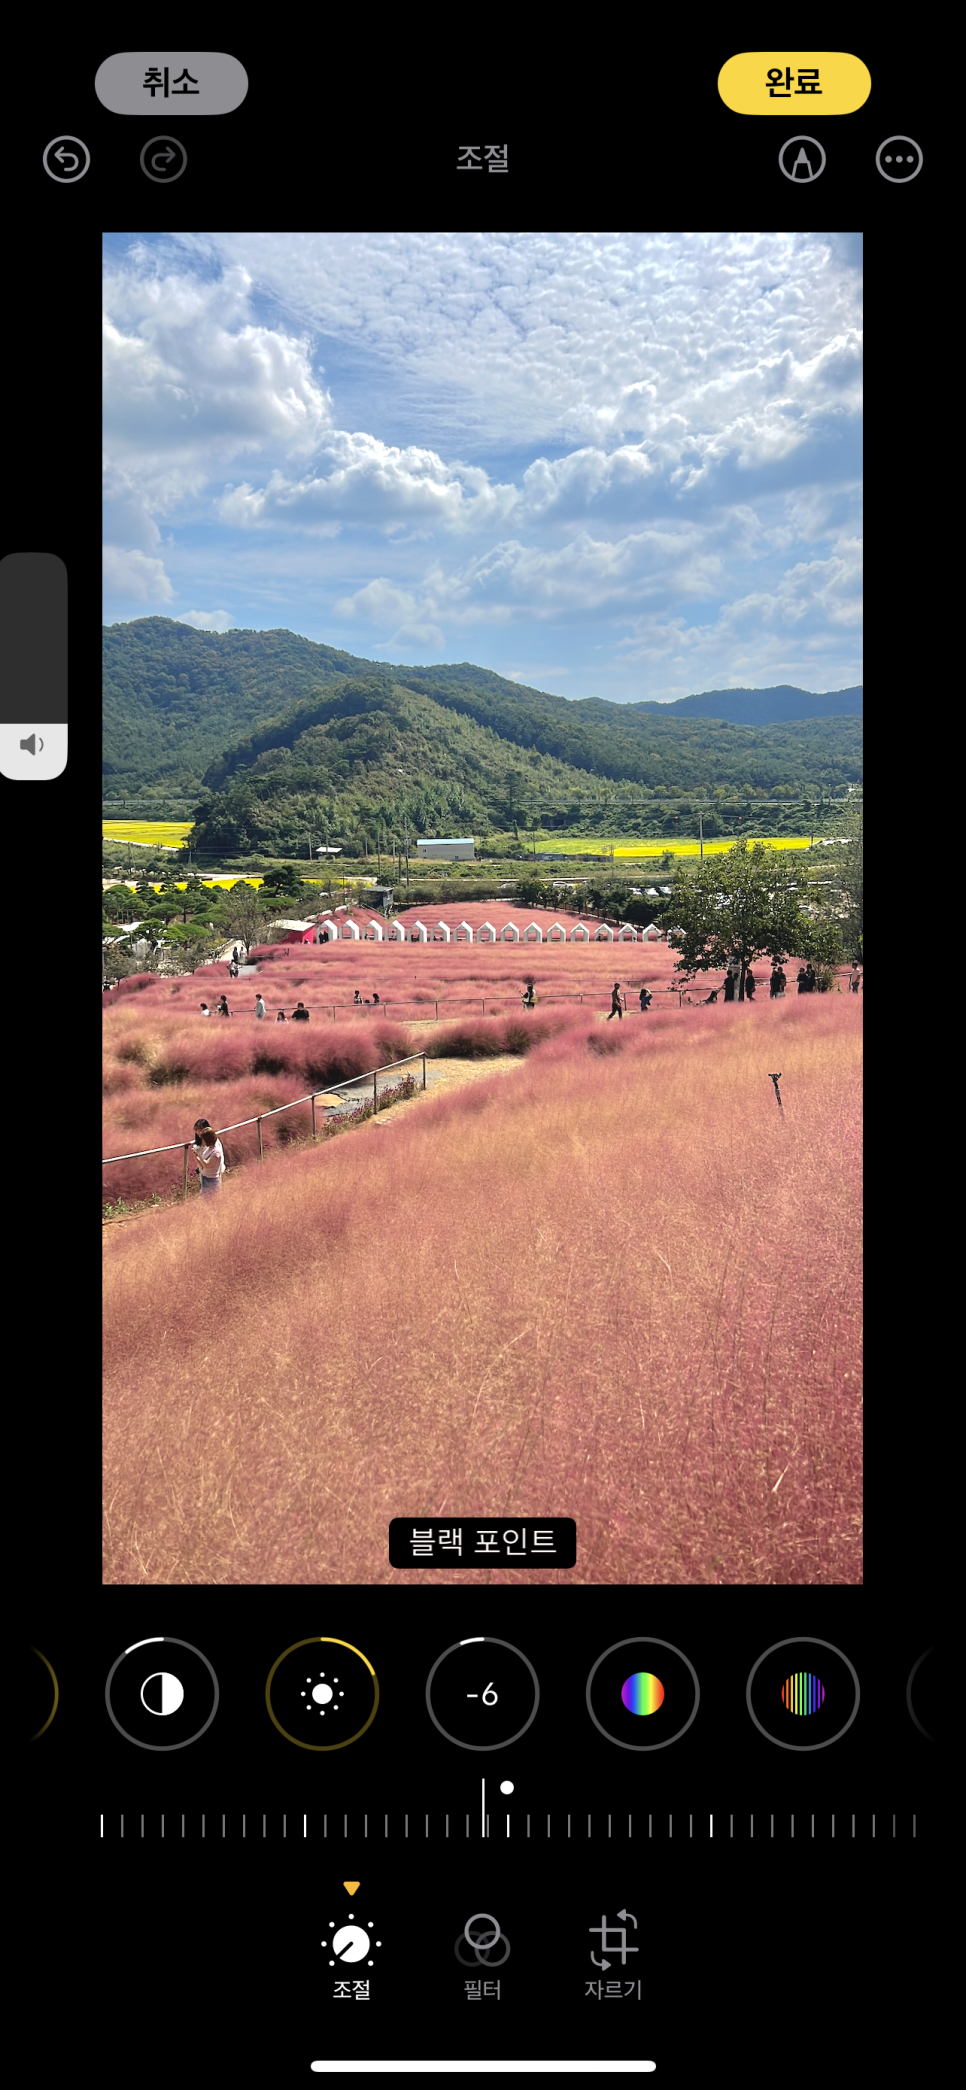 풍경 사진사가 알려주는 아이폰 사진 영상 보정 방법_아이폰 사진 일괄 보정하는 방법